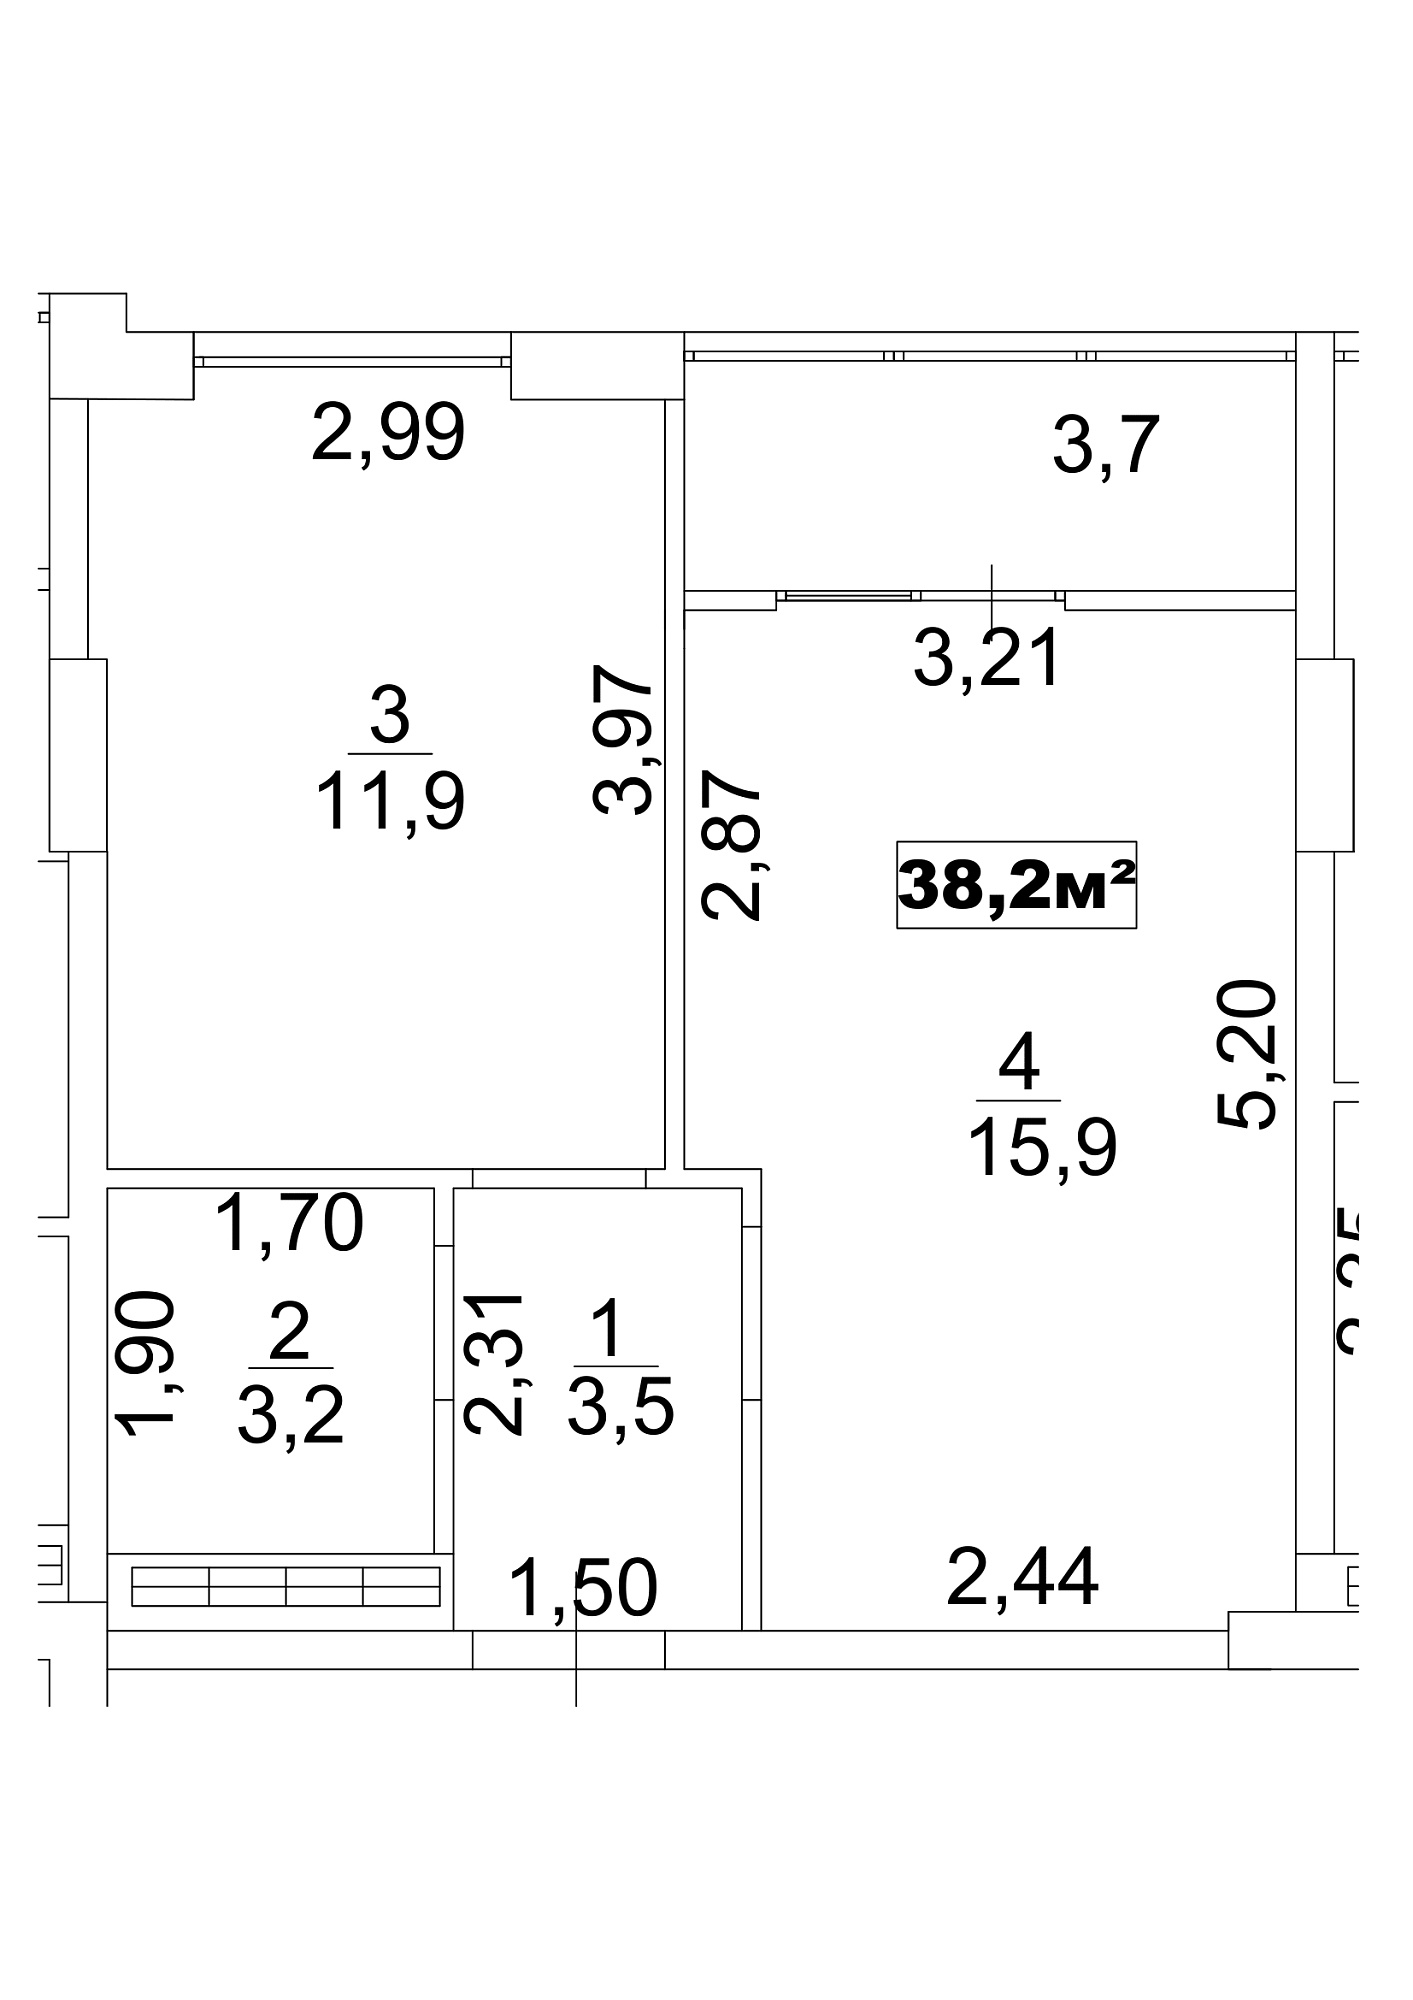 Планировка 1-к квартира площей 38.2м2, AB-13-06/00048.